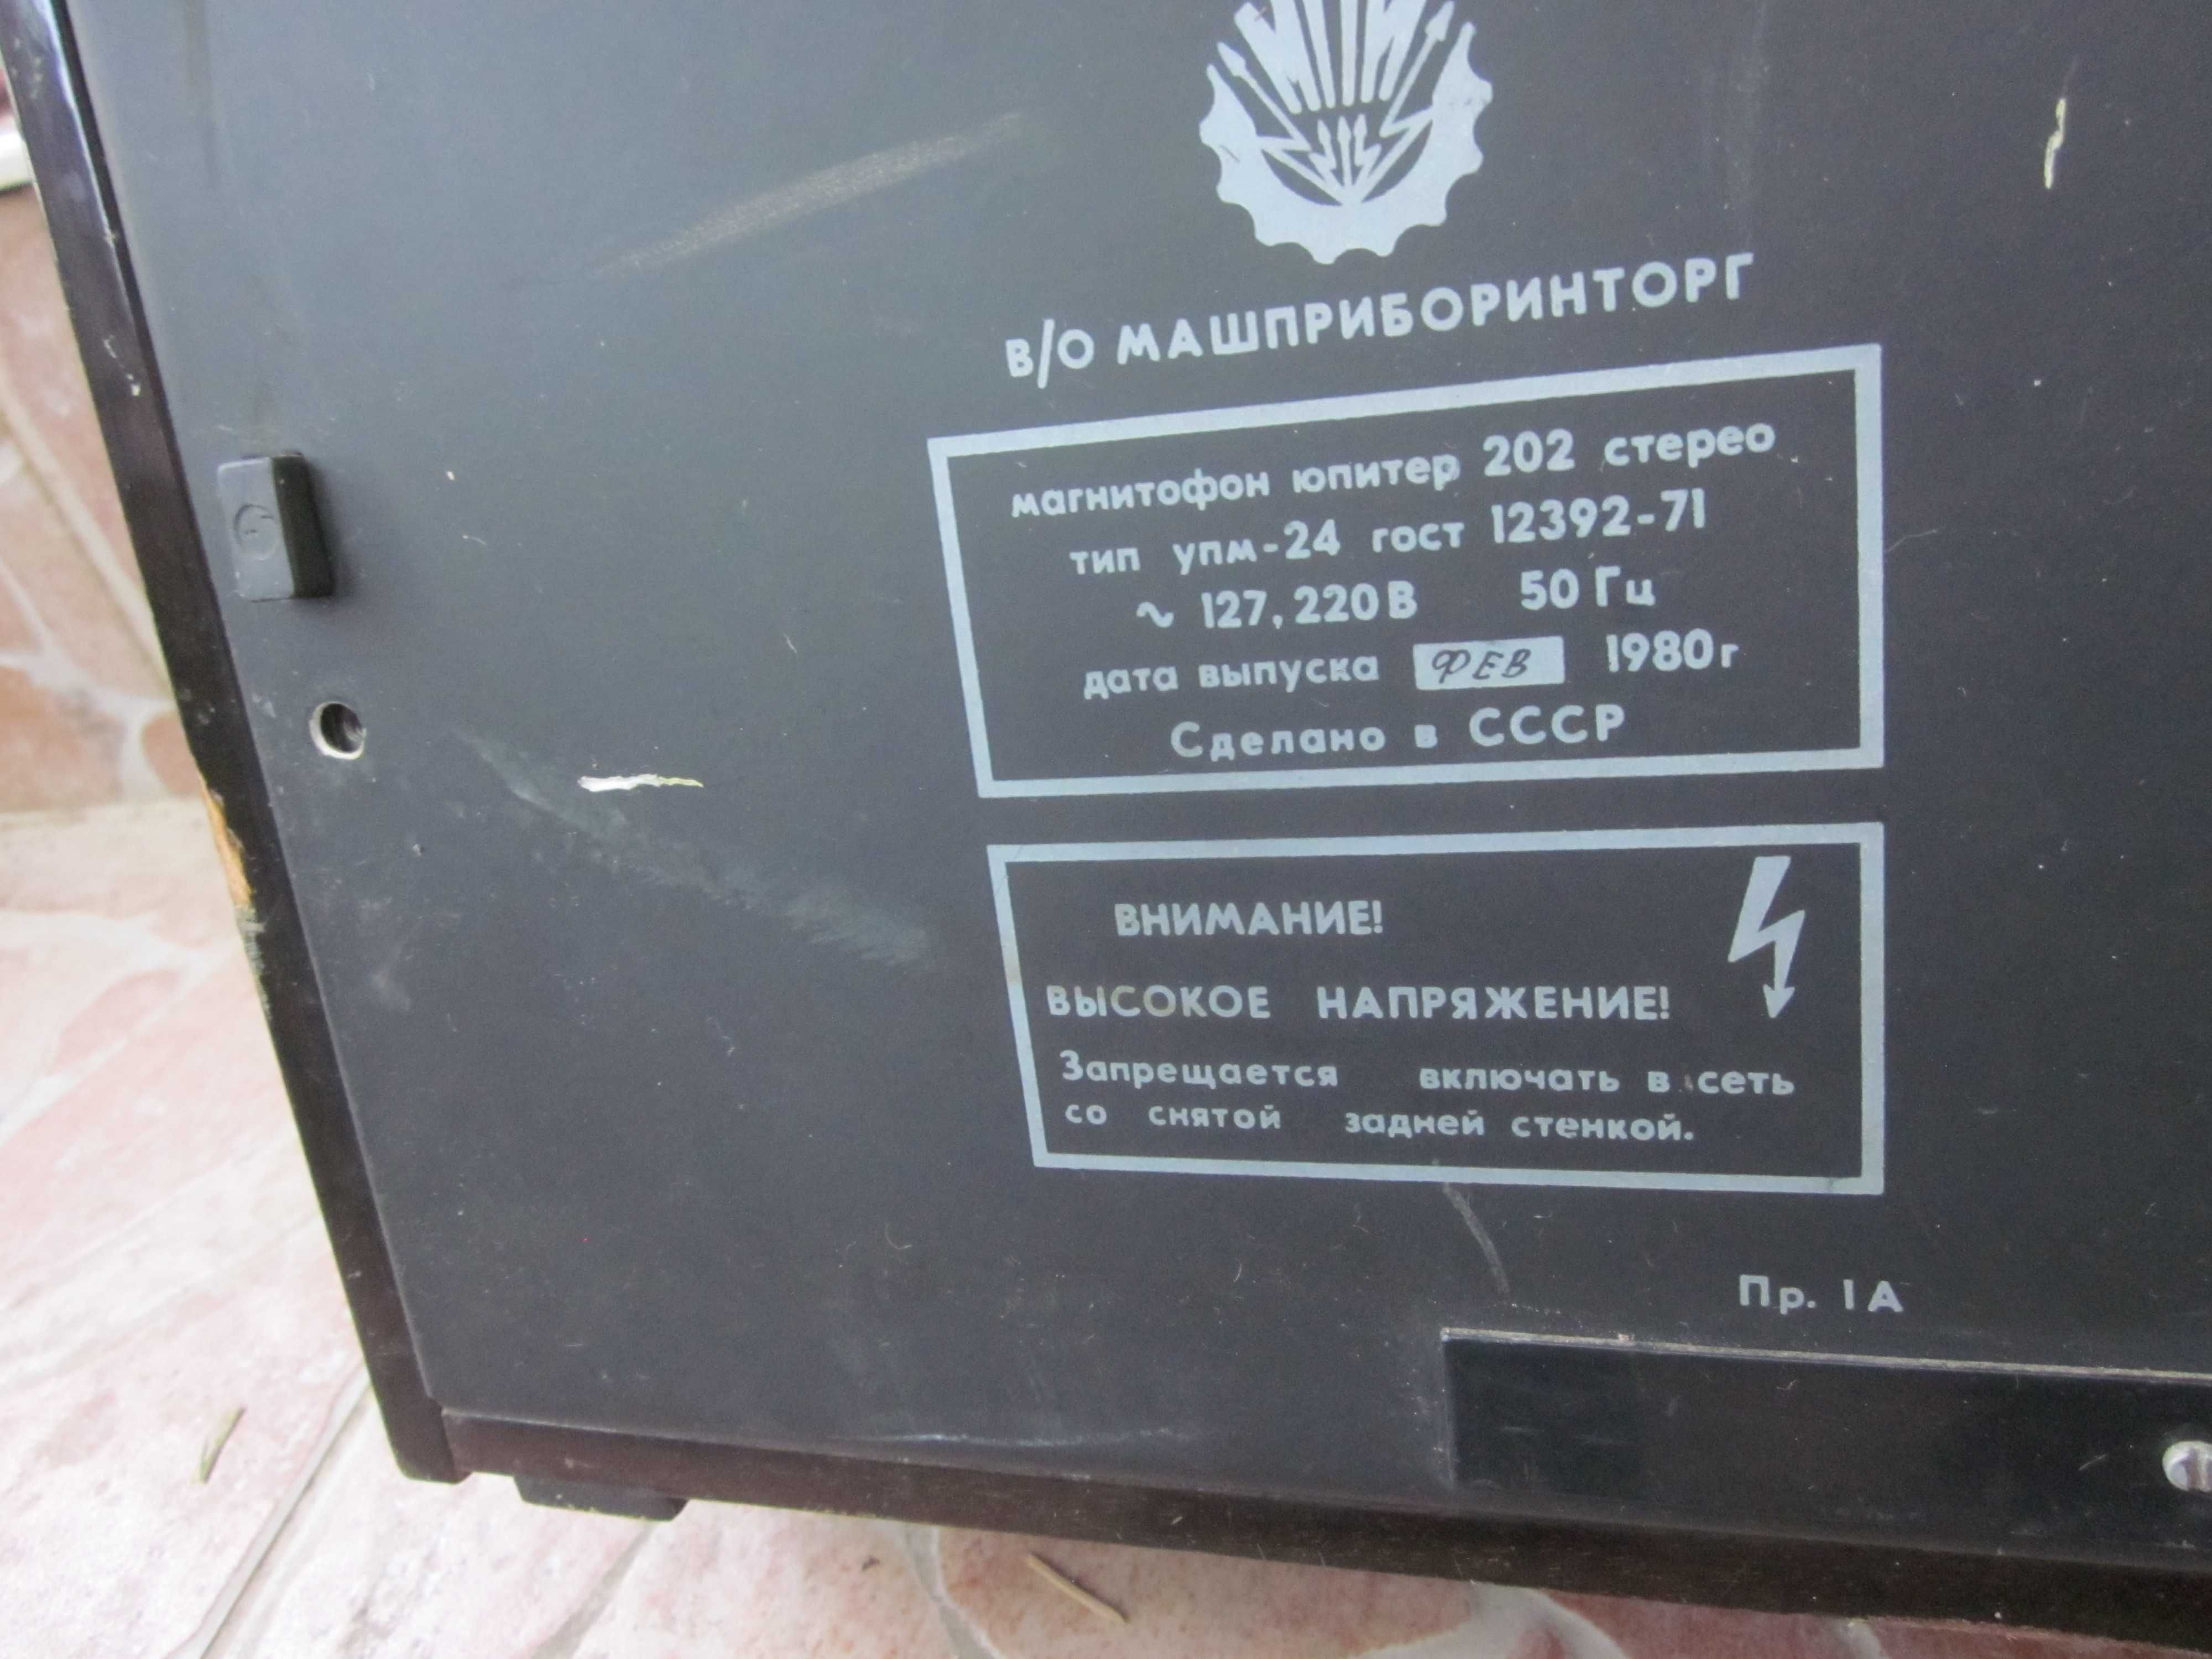 голям ролков магнетофон Юпитер 202 руски от 1980 г